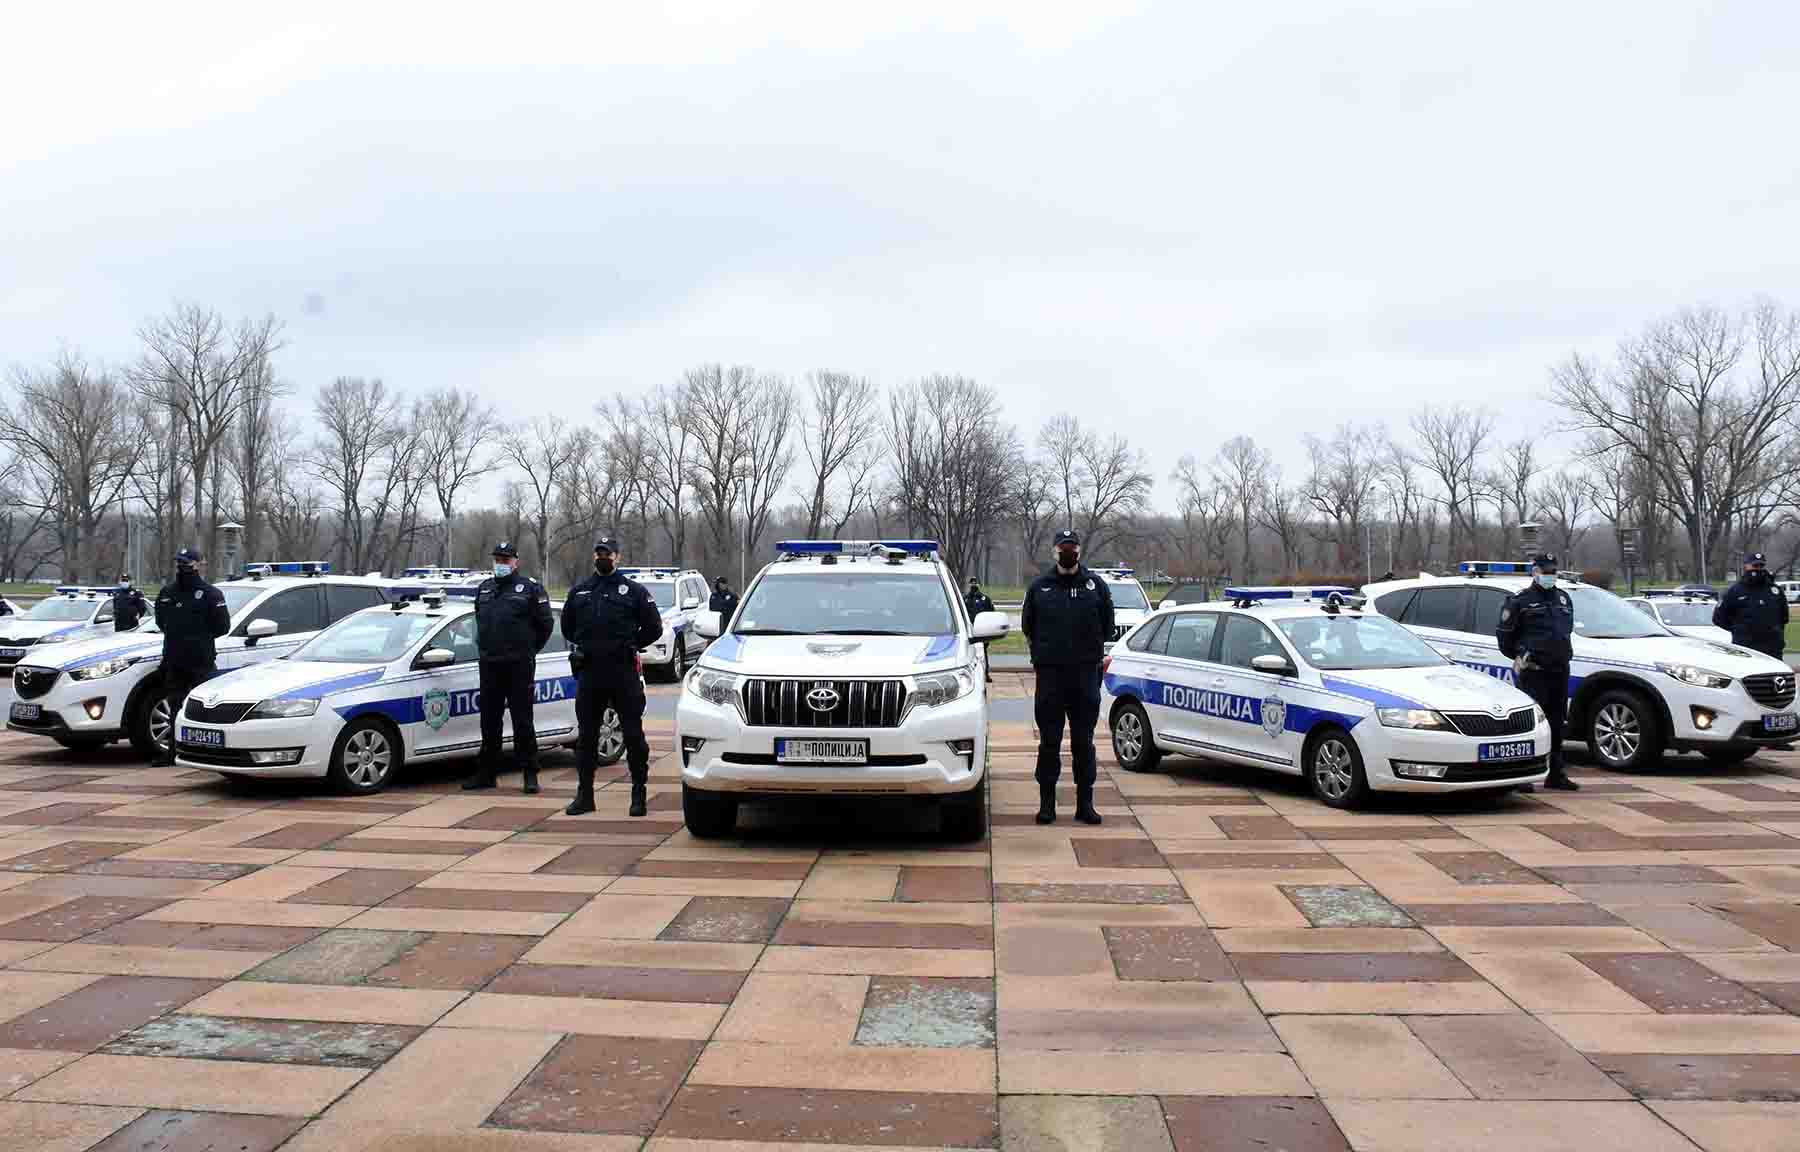 Полиција добила првих 15 возила опремљених савременом информационом опремом